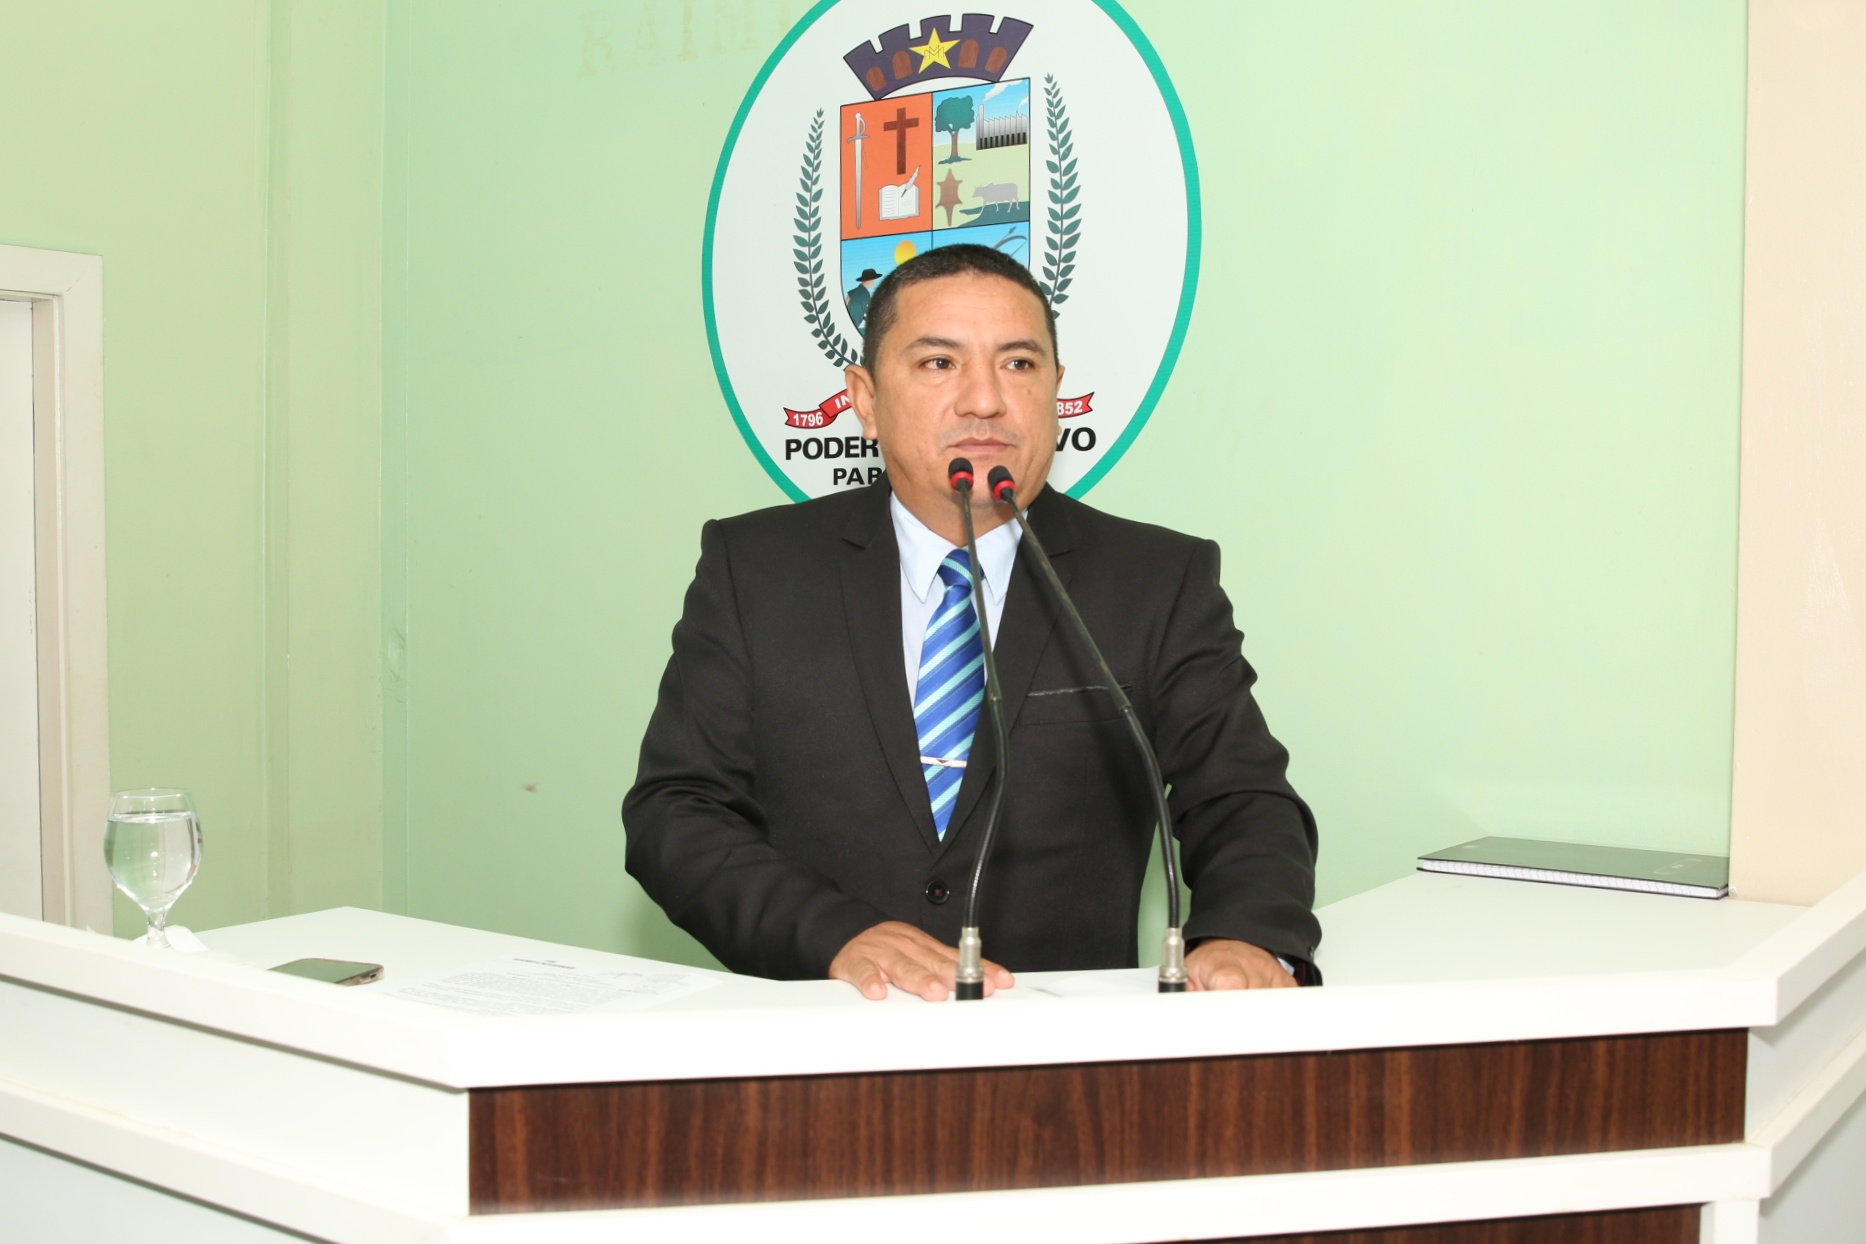 Críticas ao Governo do Estado e demandas da Zona Rural pautam discurso do vereador Gelson Moraes